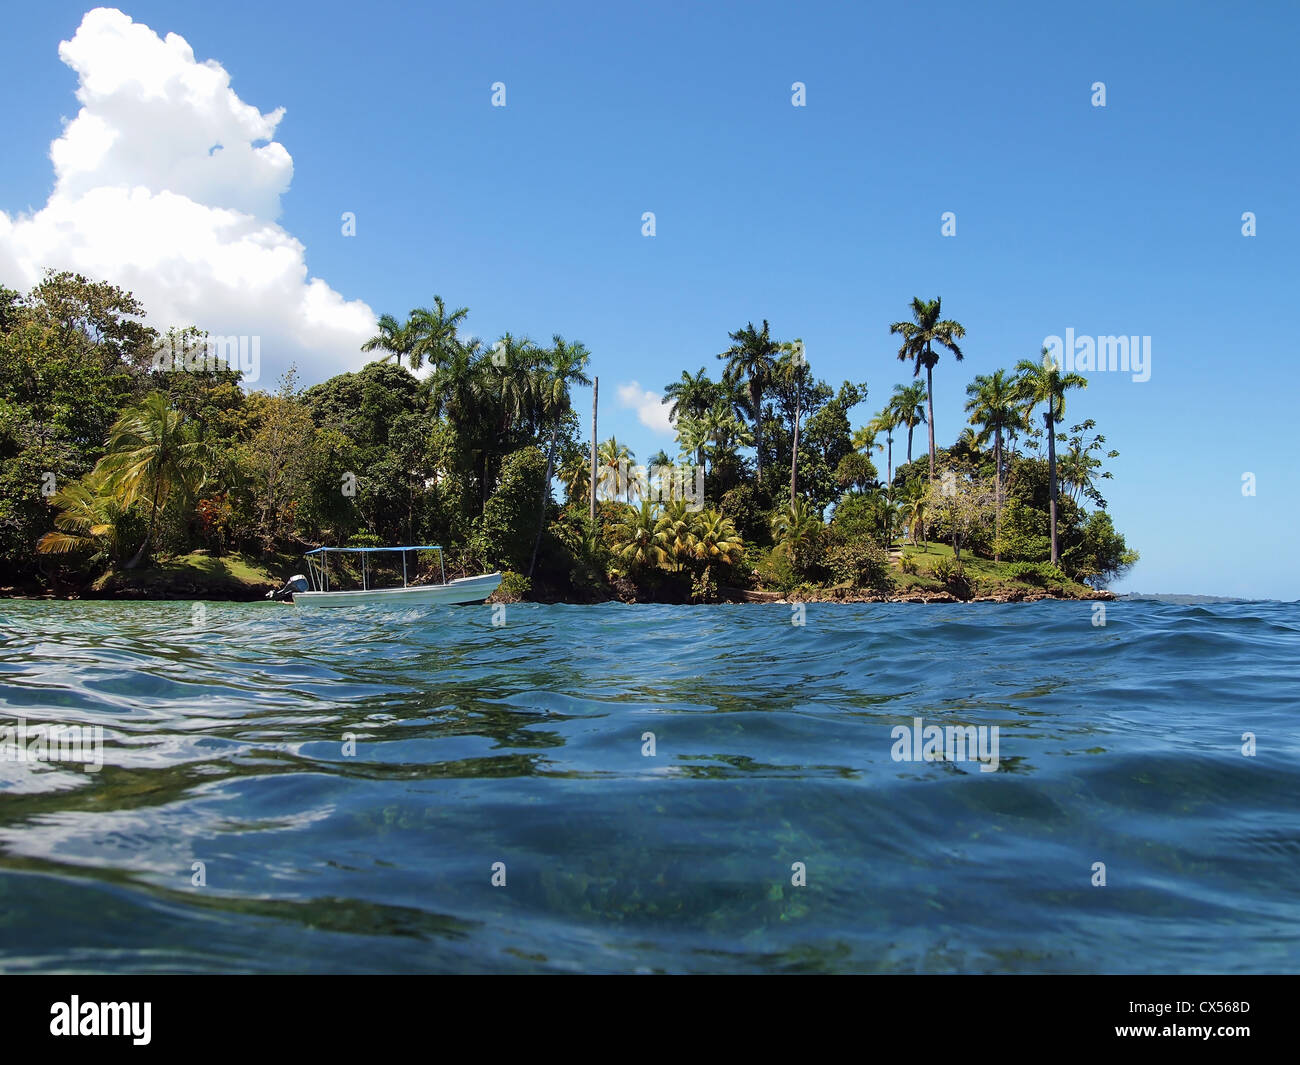 Barca nei pressi di un'isola tropicale con vegetazione bellissima Foto Stock